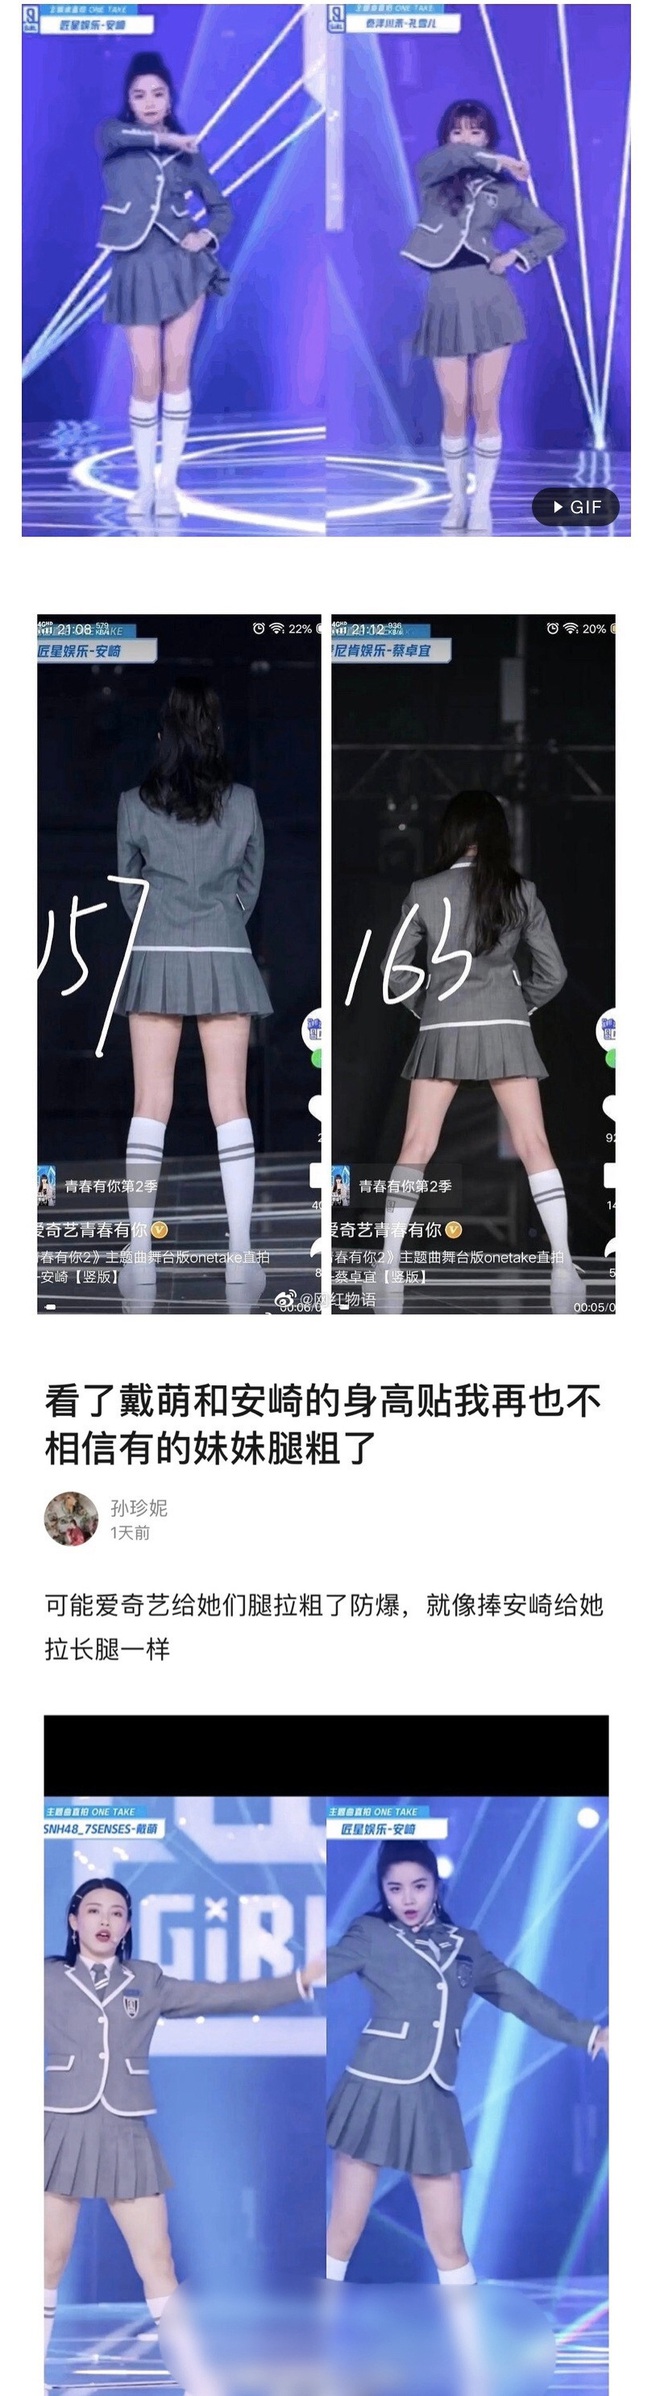 Tranh cãi nảy lửa trên Weibo: Một thành viên THE9 được biệt đãi lộ liễu, debut nhưng danh không xứng với thực? - Ảnh 5.